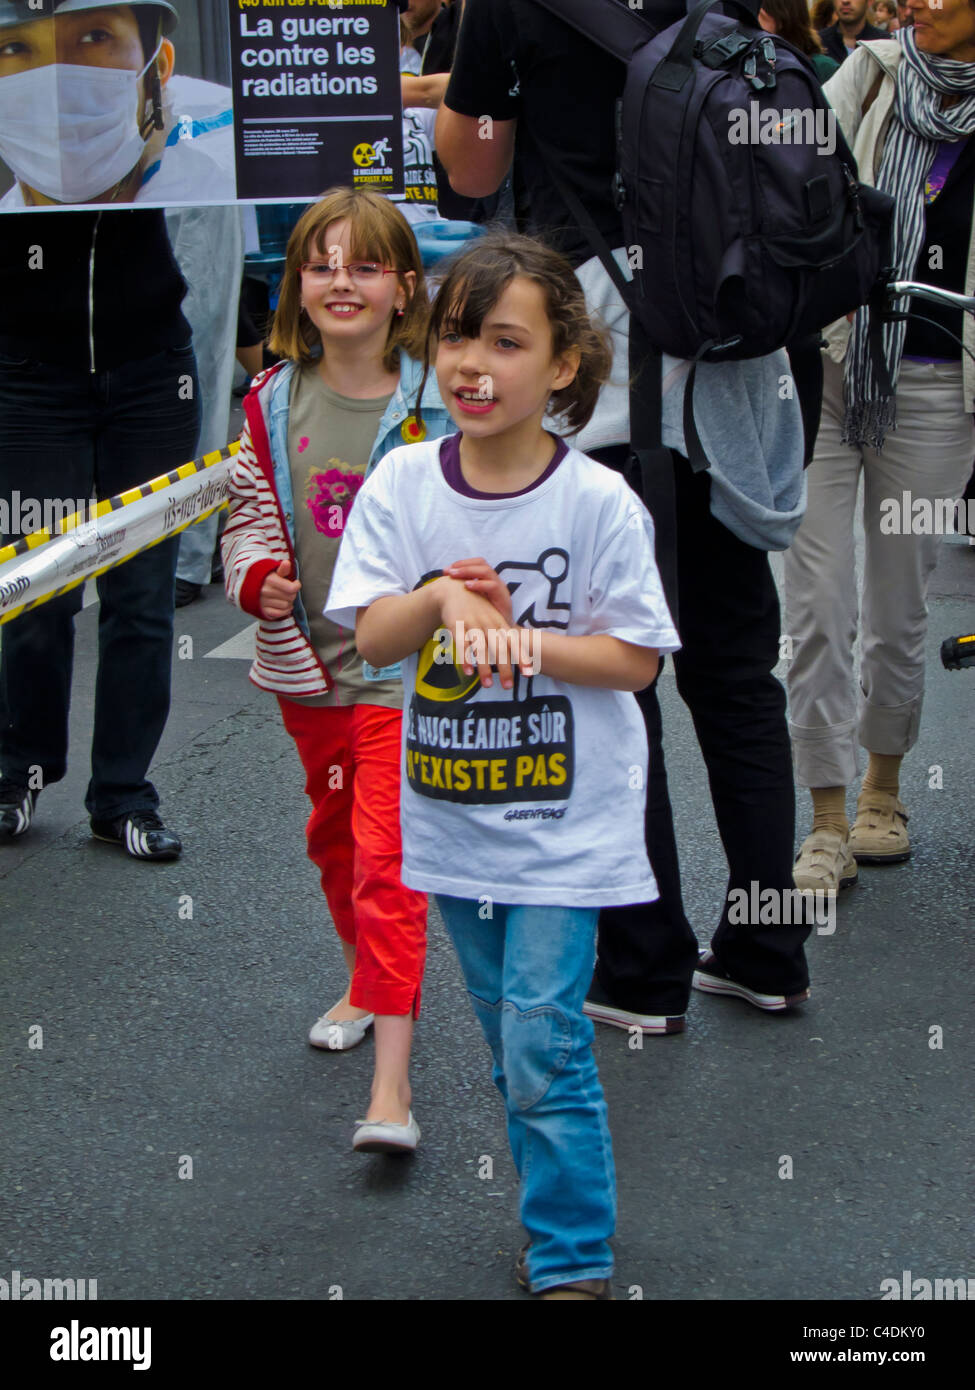 Parigi, Francia, dimostrazione del popolo francese contro l'energia nucleare, Famiglia su strada, Bambini con T-Shirts, protesta della famiglia dell'energia nucleare Foto Stock